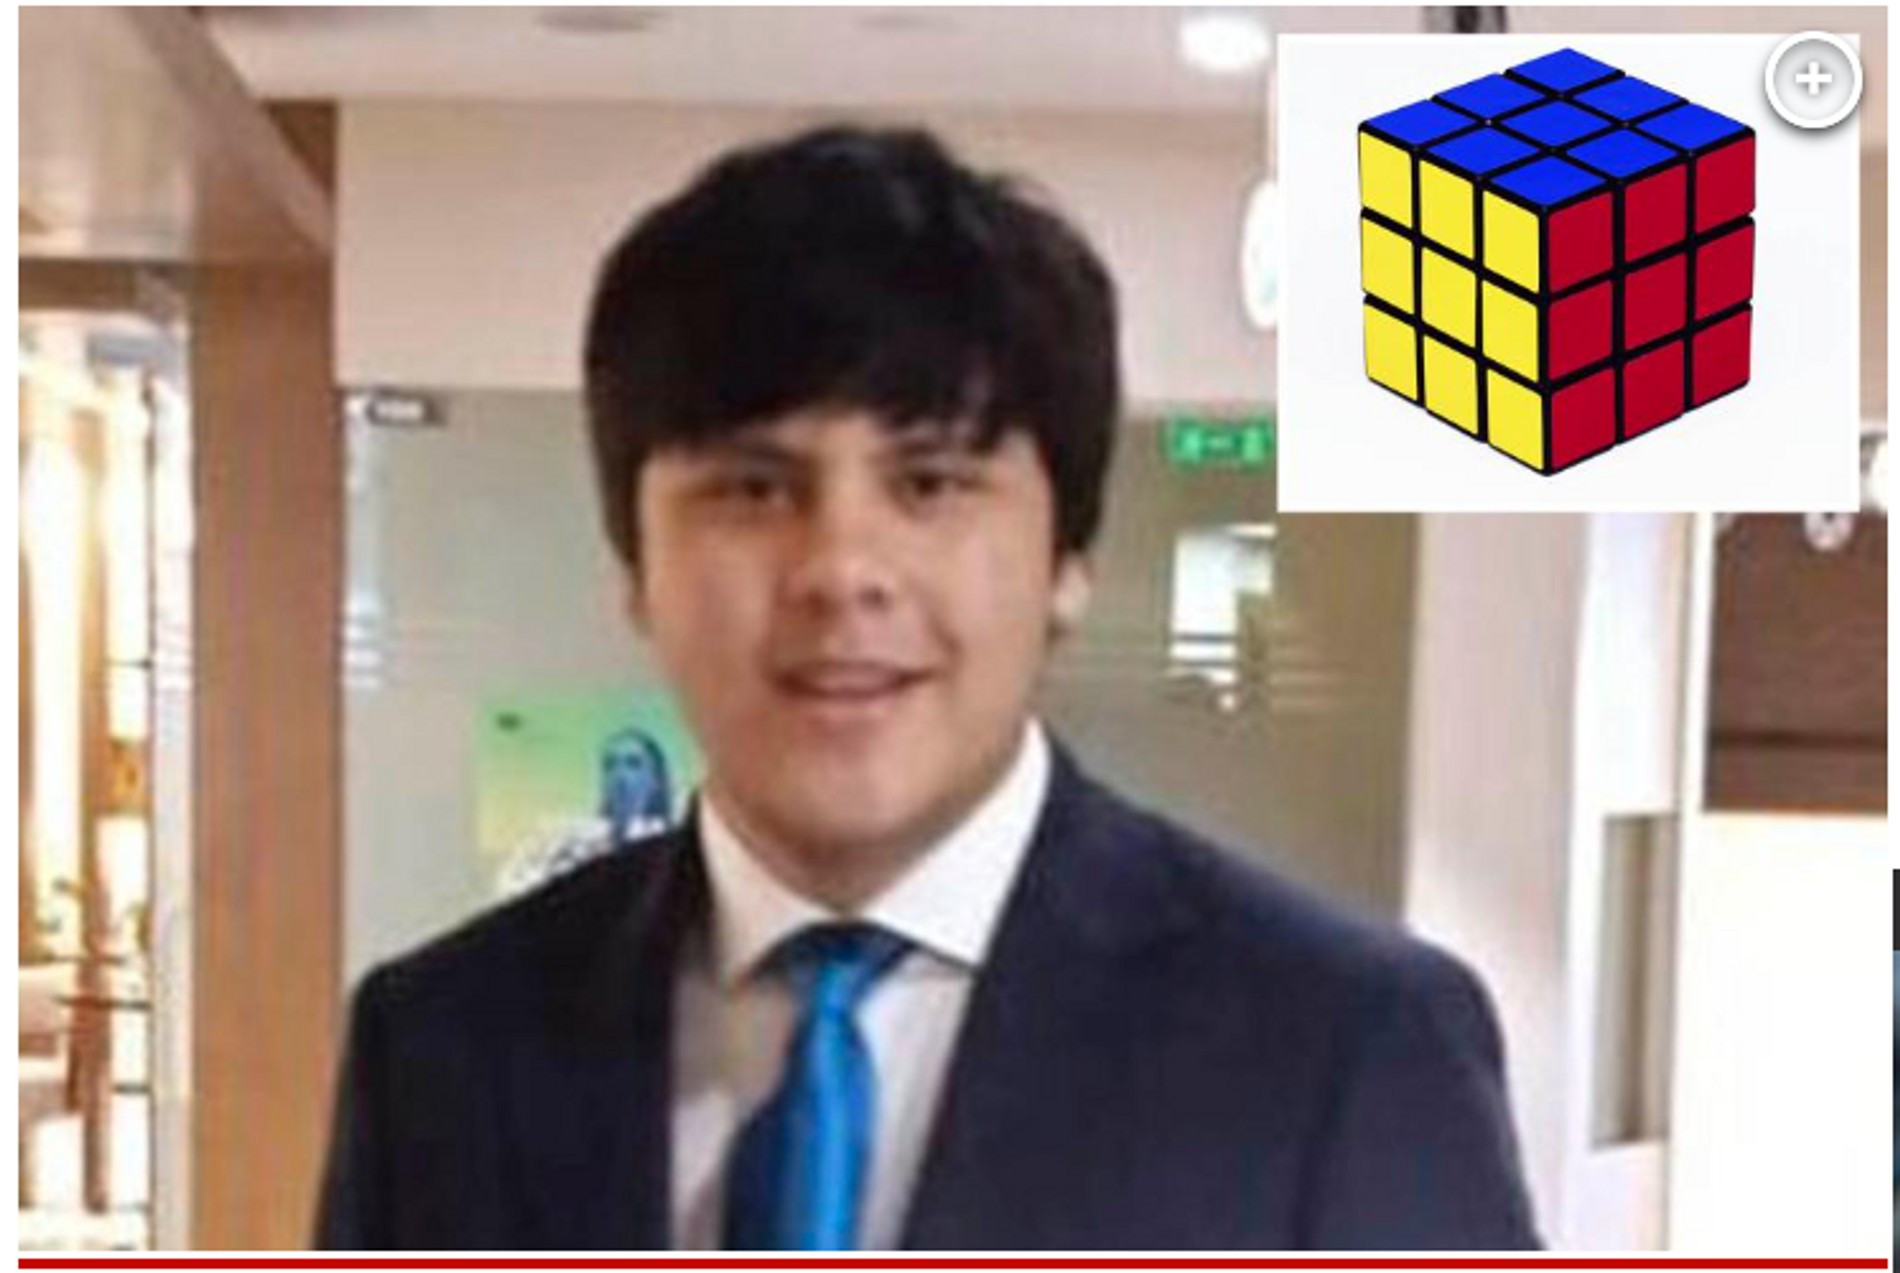 Сулейман Давуд мог собрать кубик Рубика за 20 секунд
Фото: NY Post